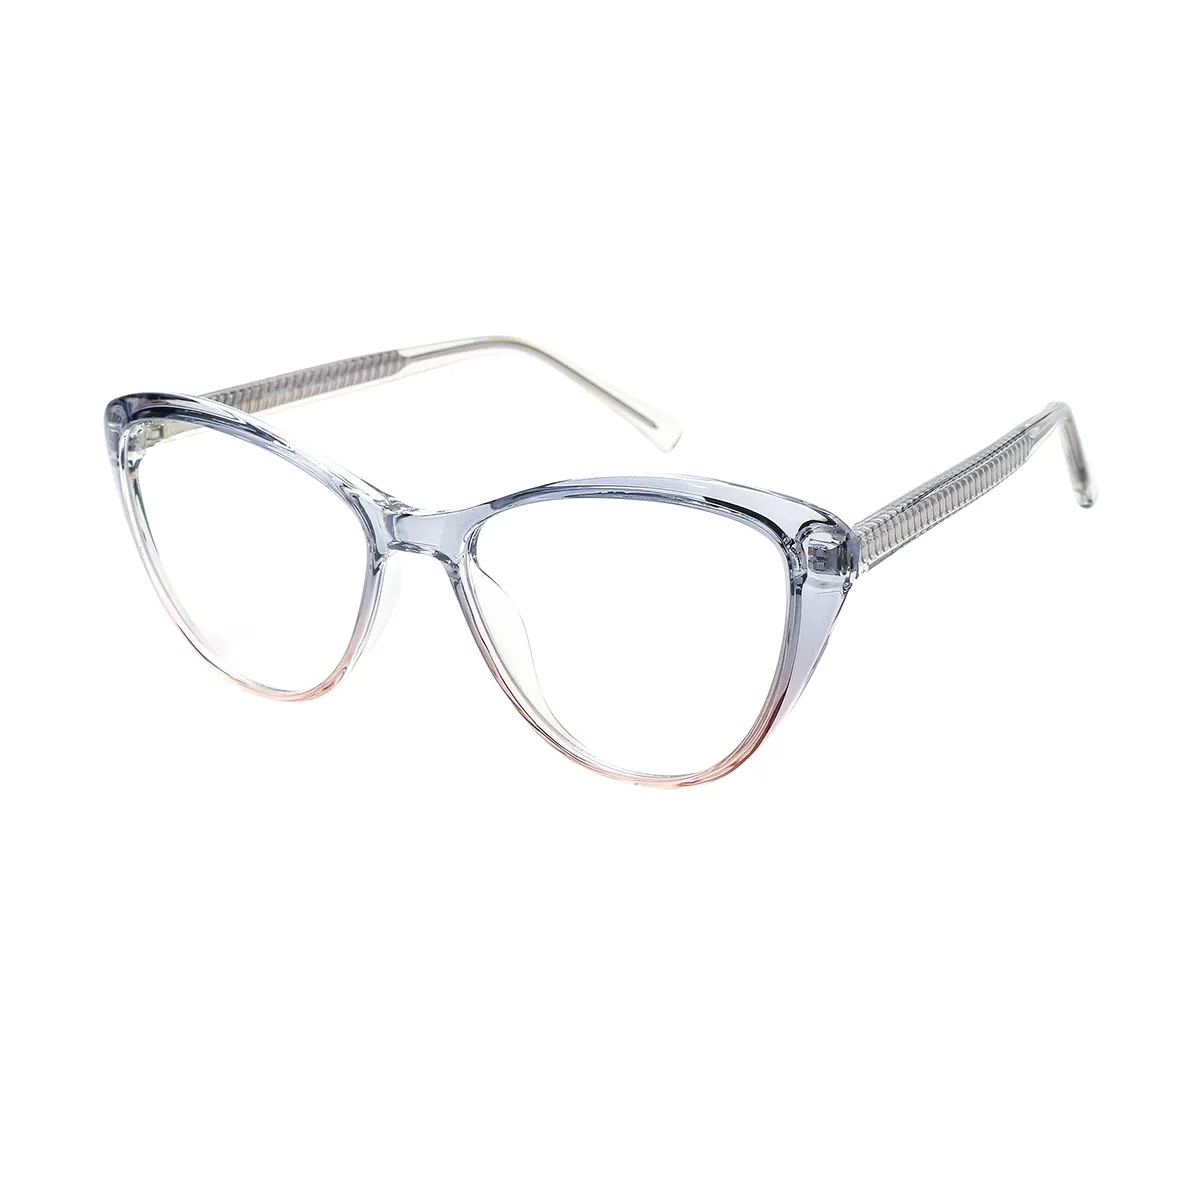 Margie - Cat-eye  Glasses for Women